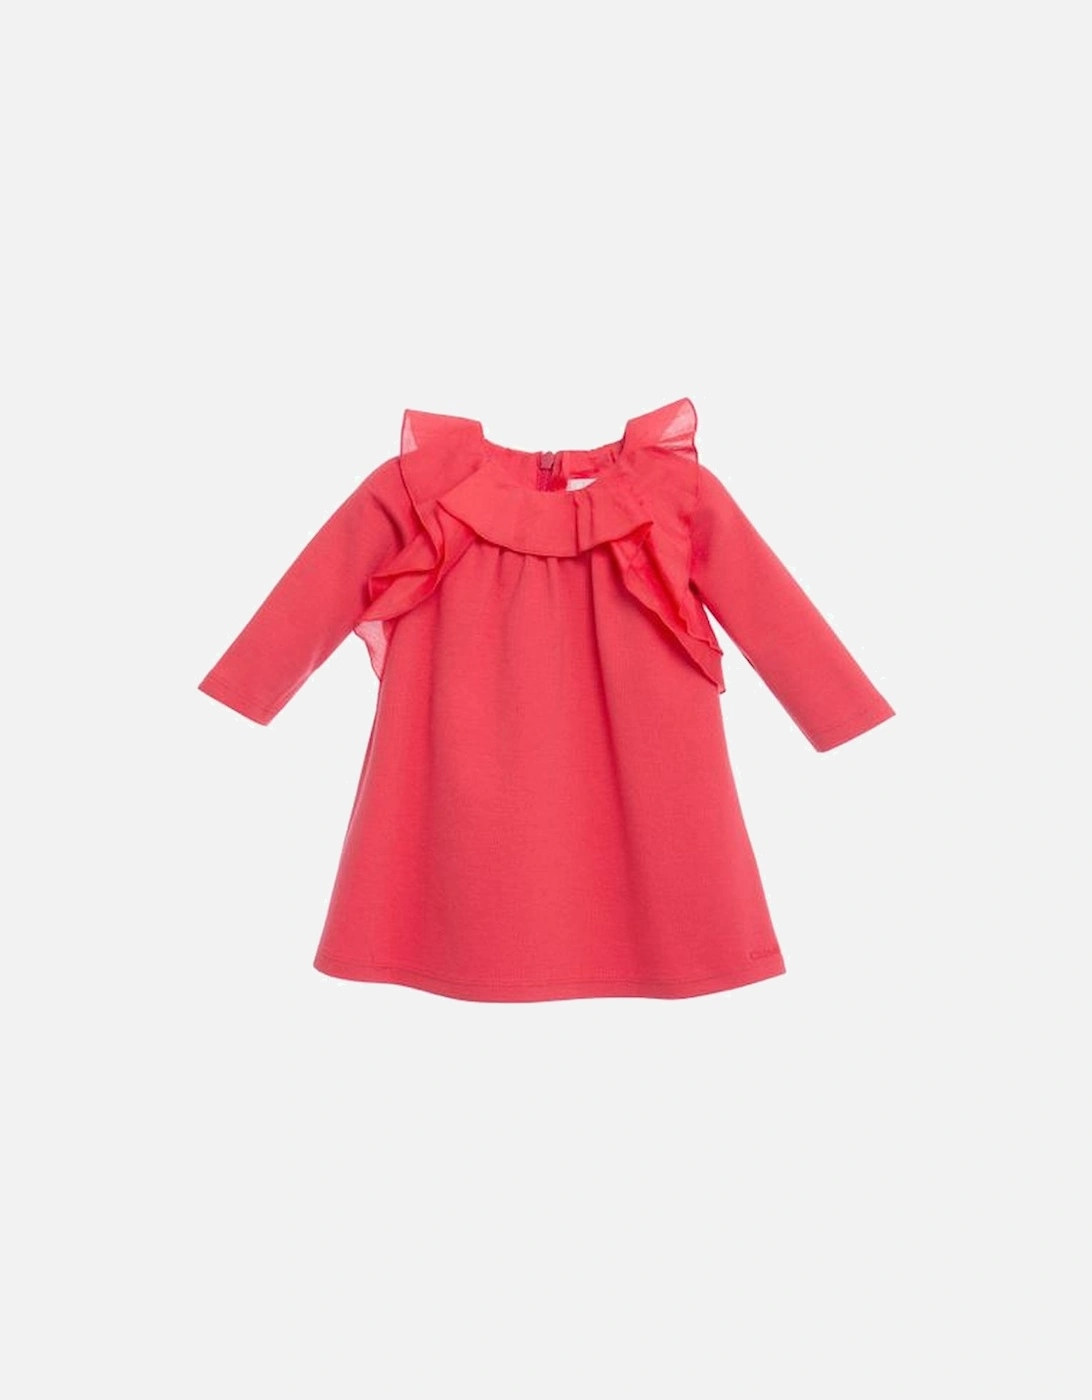 Baby Girls Red Ruffle Dress, 2 of 1